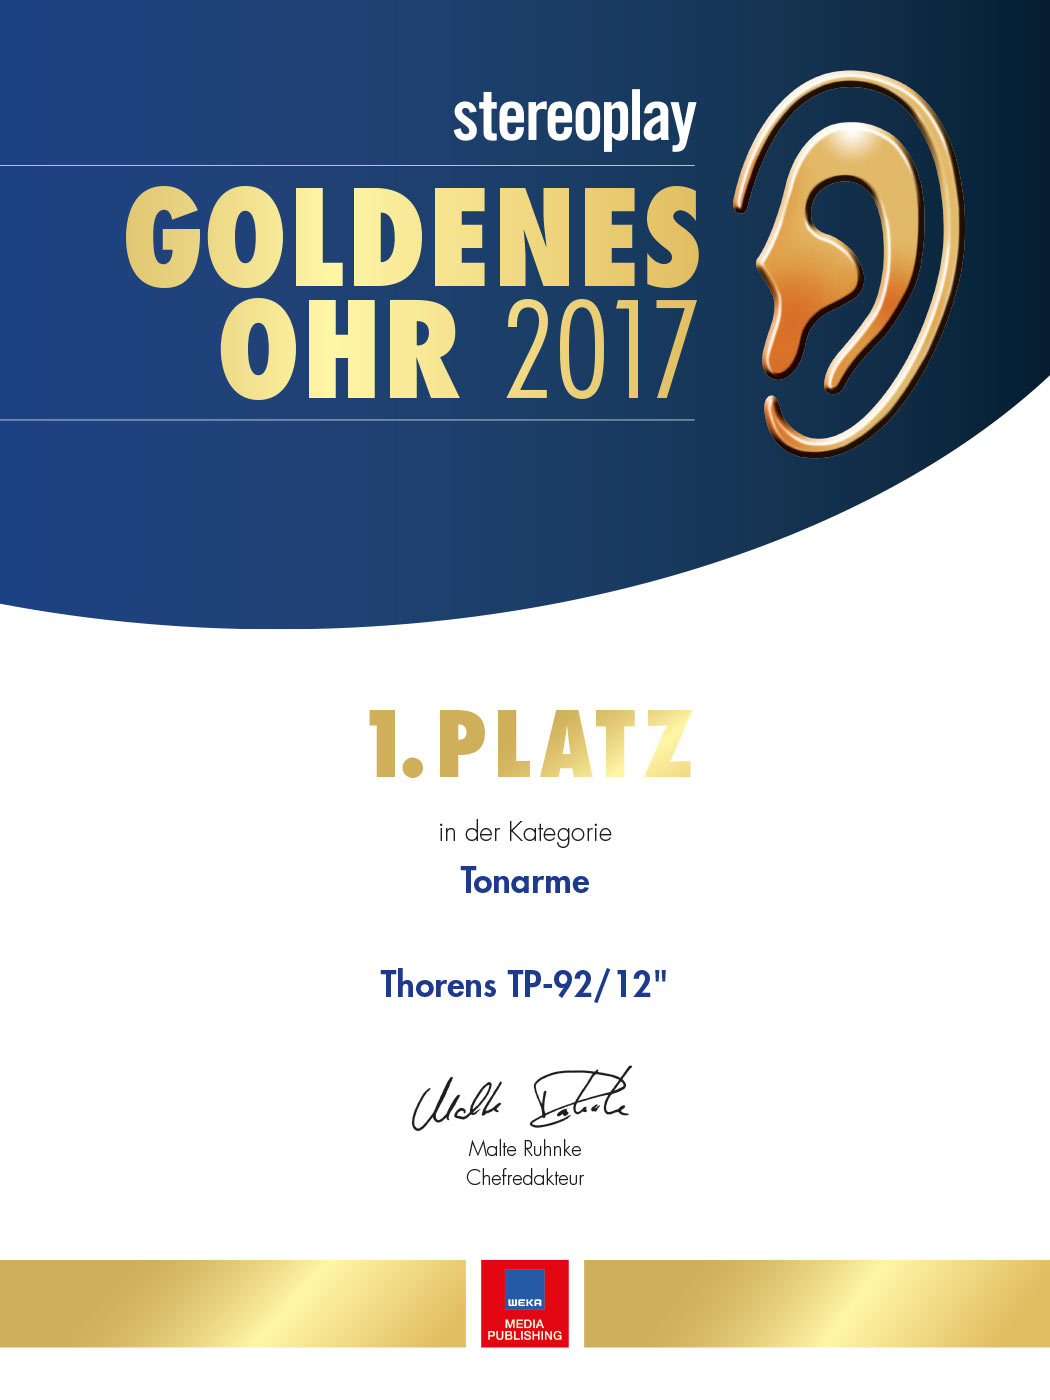 Thorens TP 92/12  Urkunde Goldenes Ohr 2017 | Stereoplay